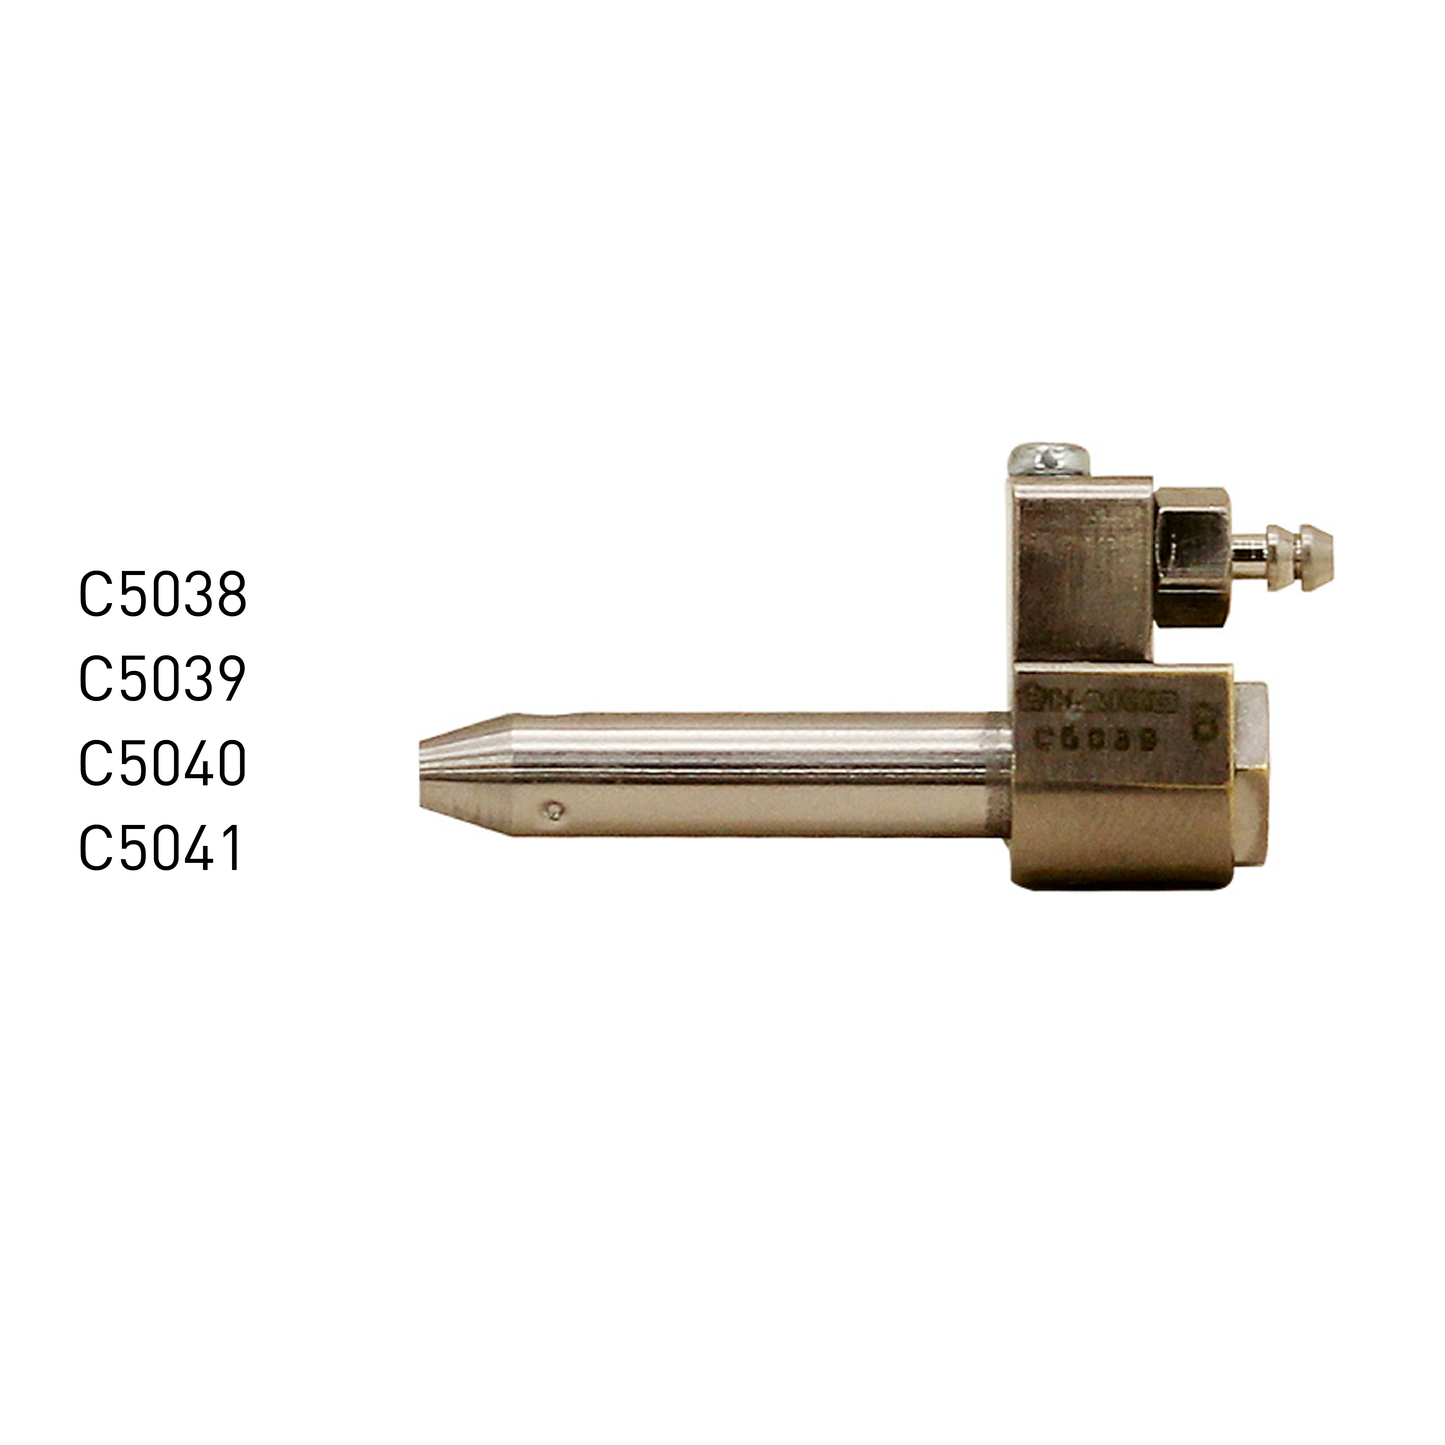 Hakko_N2 Soldering iron tip T30 Nozzle Assembly FM2032 C5038 C5039 C5040 C5041